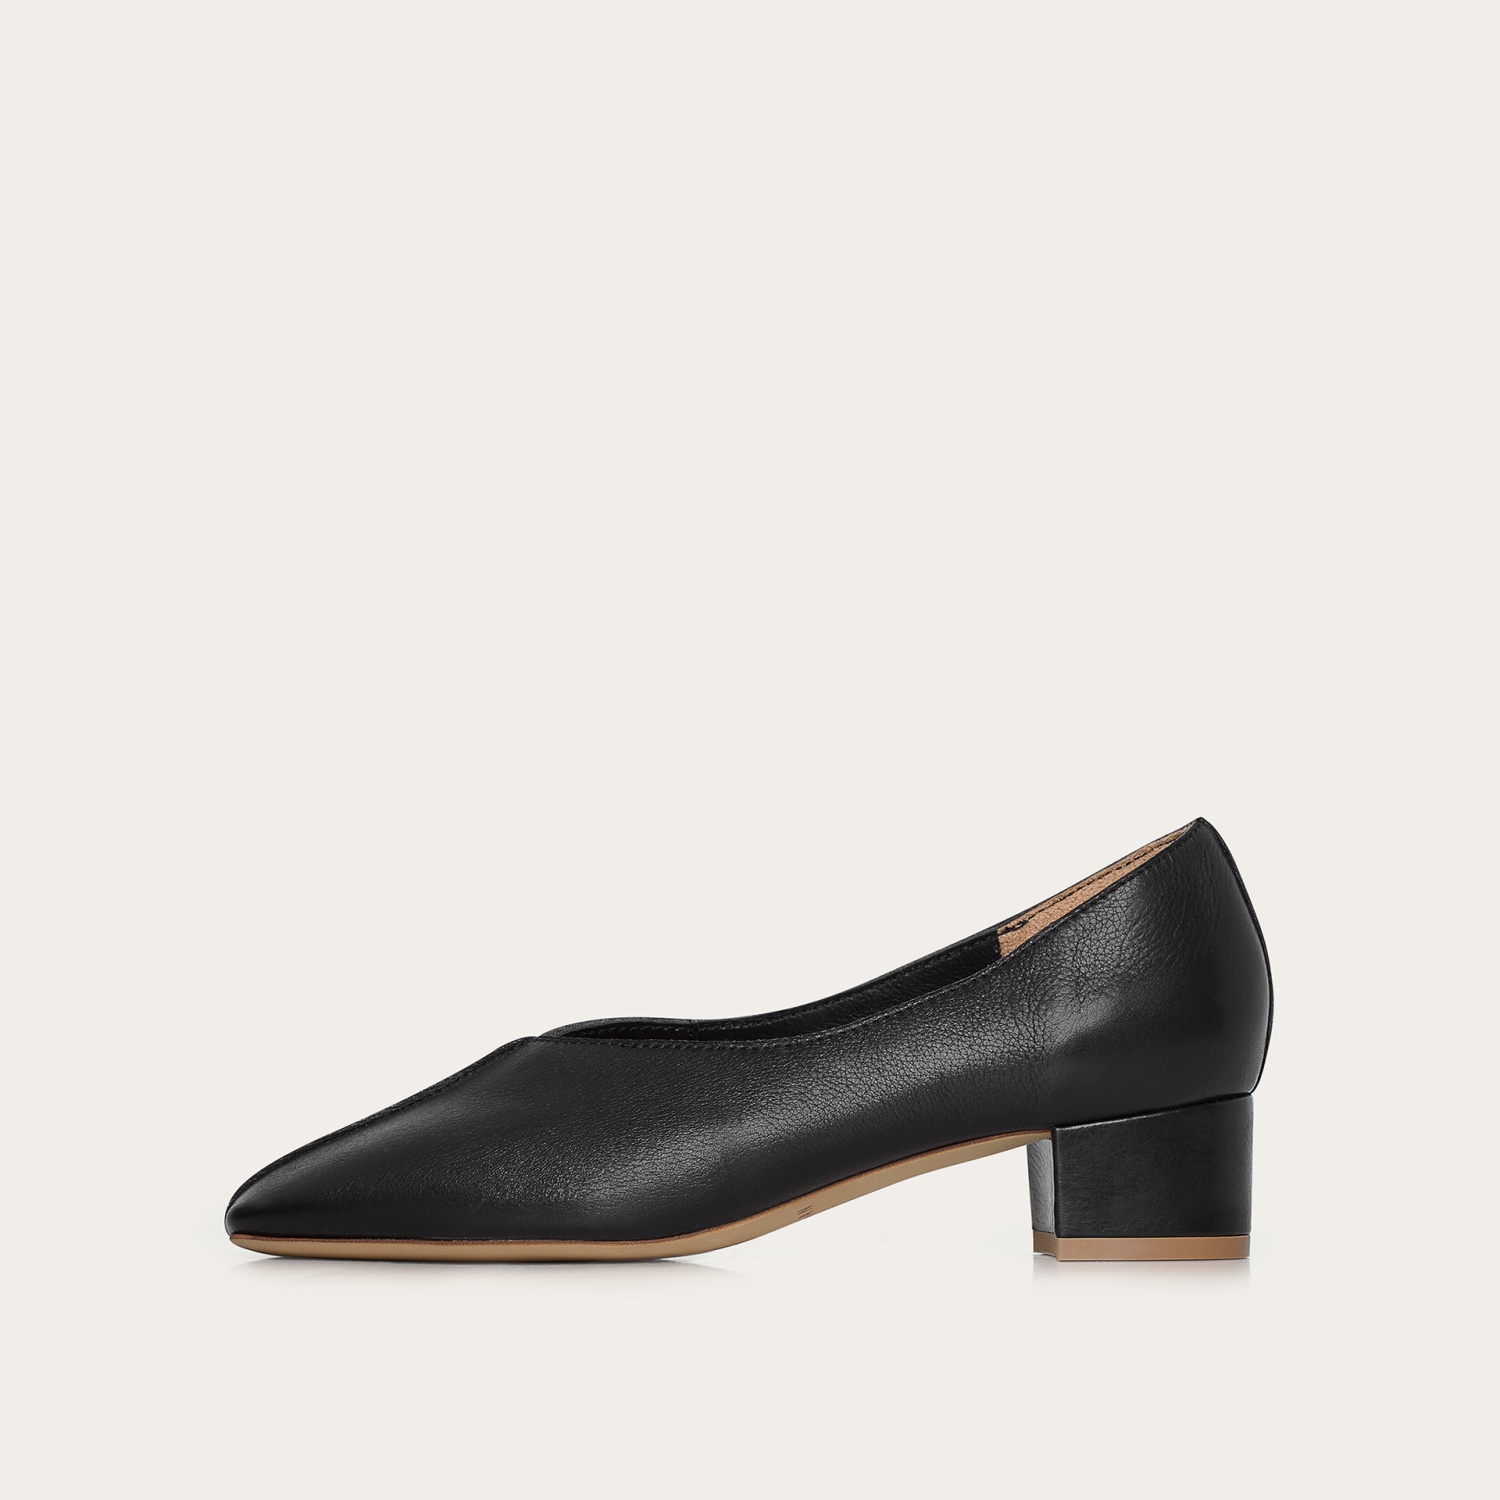  Apulia Heels, black-0 